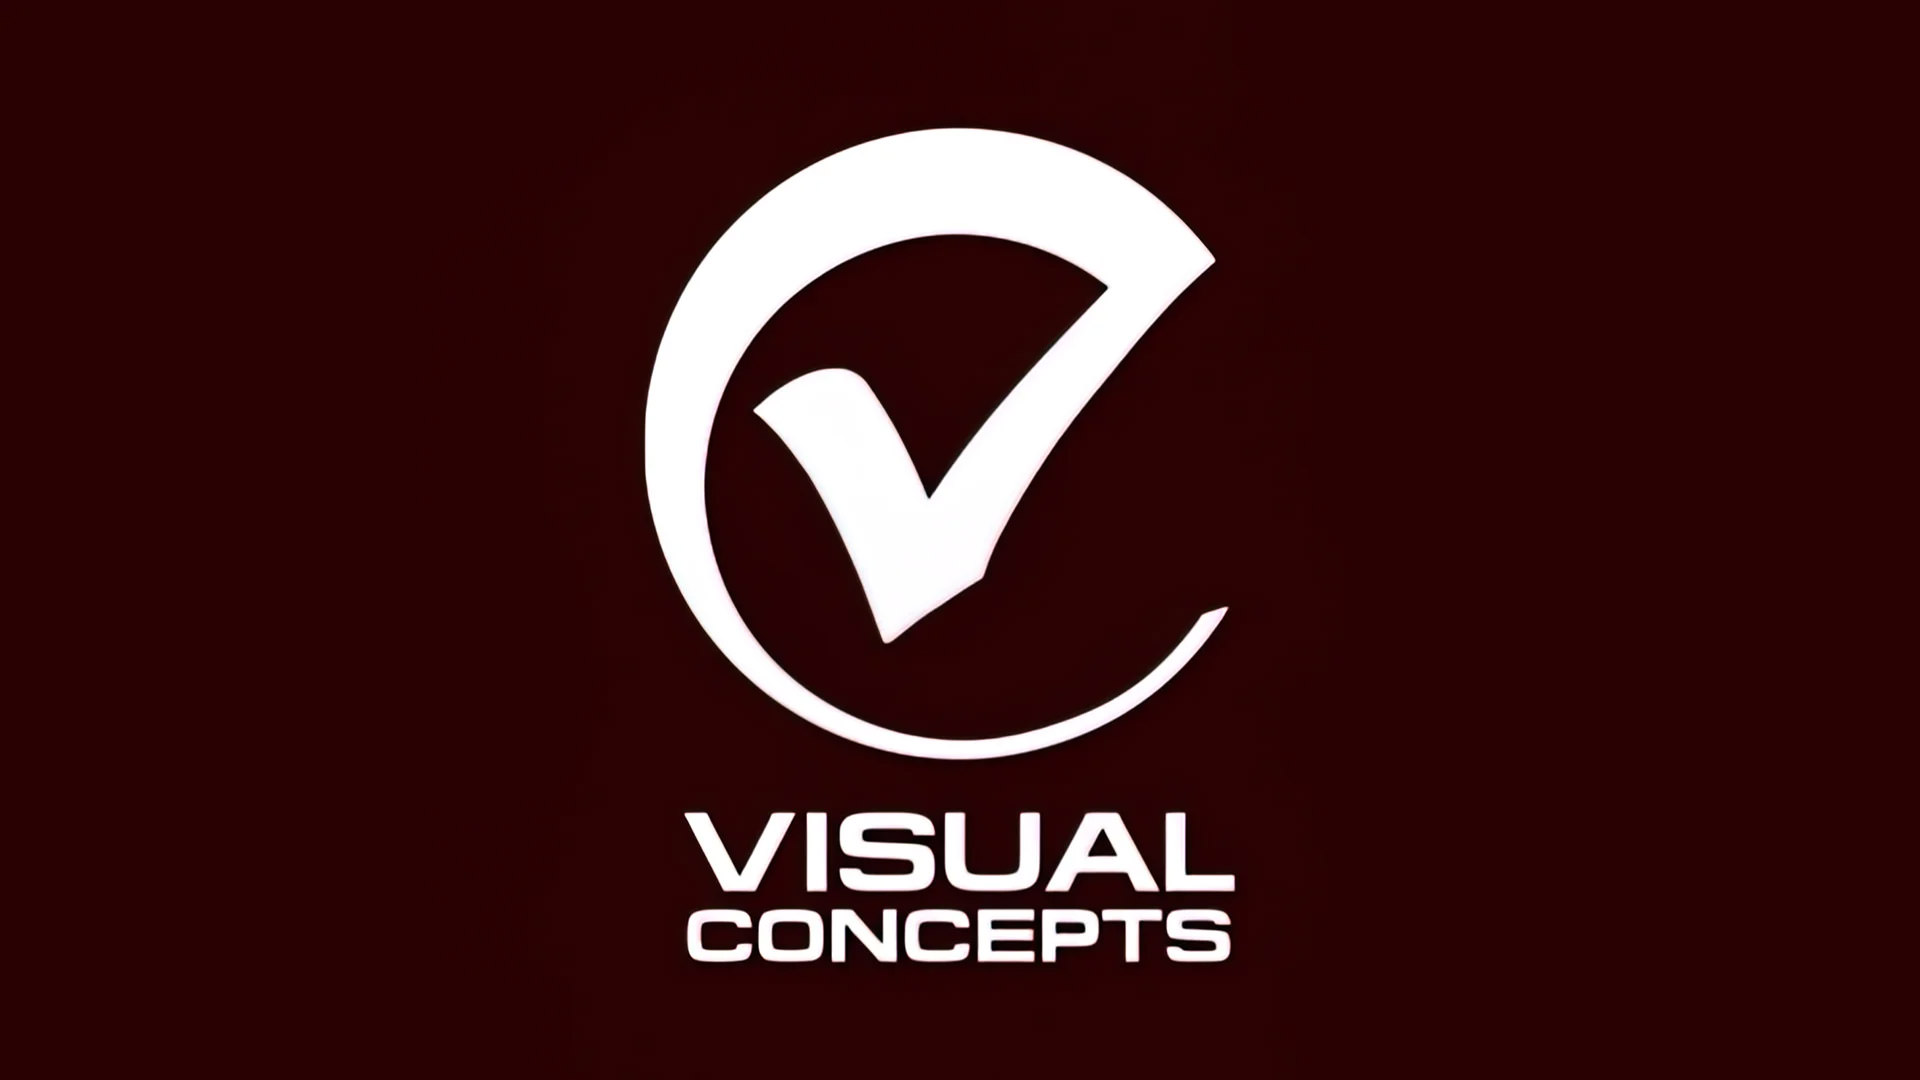 لوگو استودیوی Visual Concepts